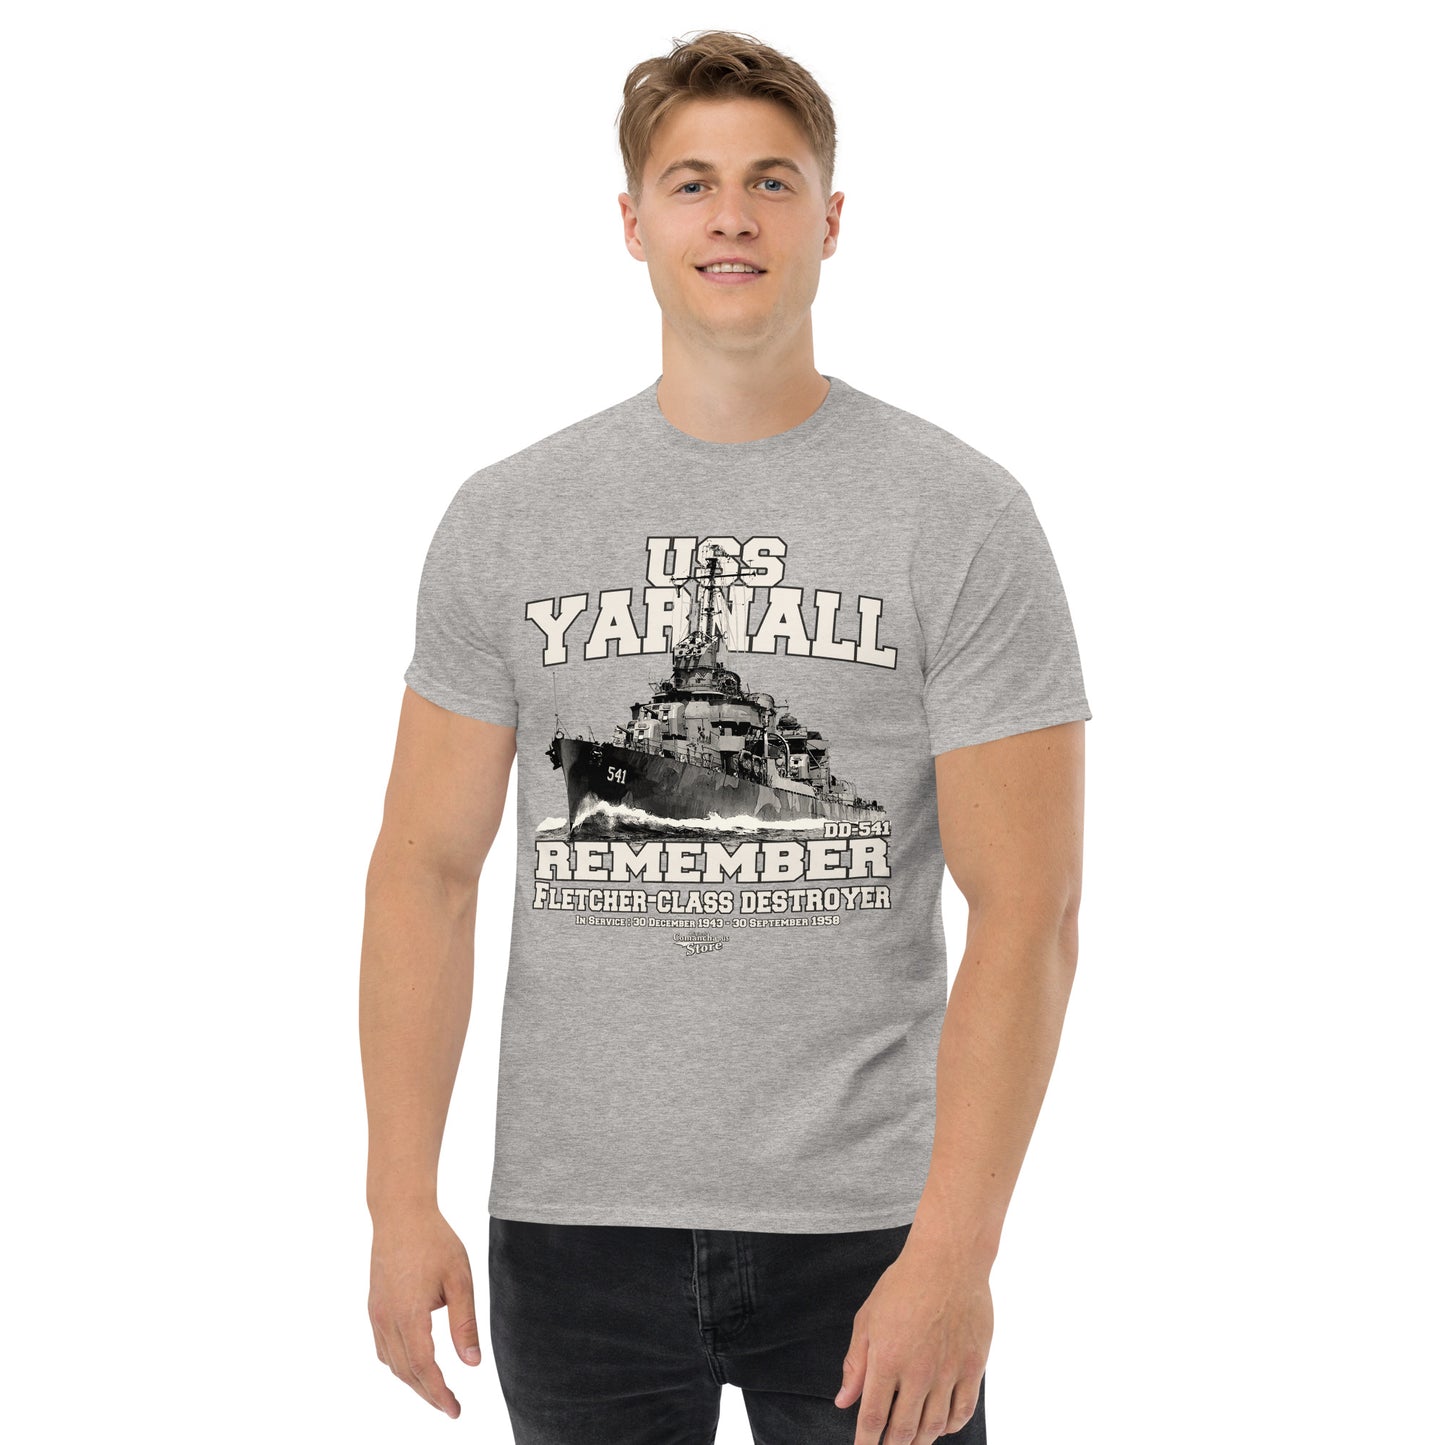 USS Yarnall DD-541 destroyer t-shirt